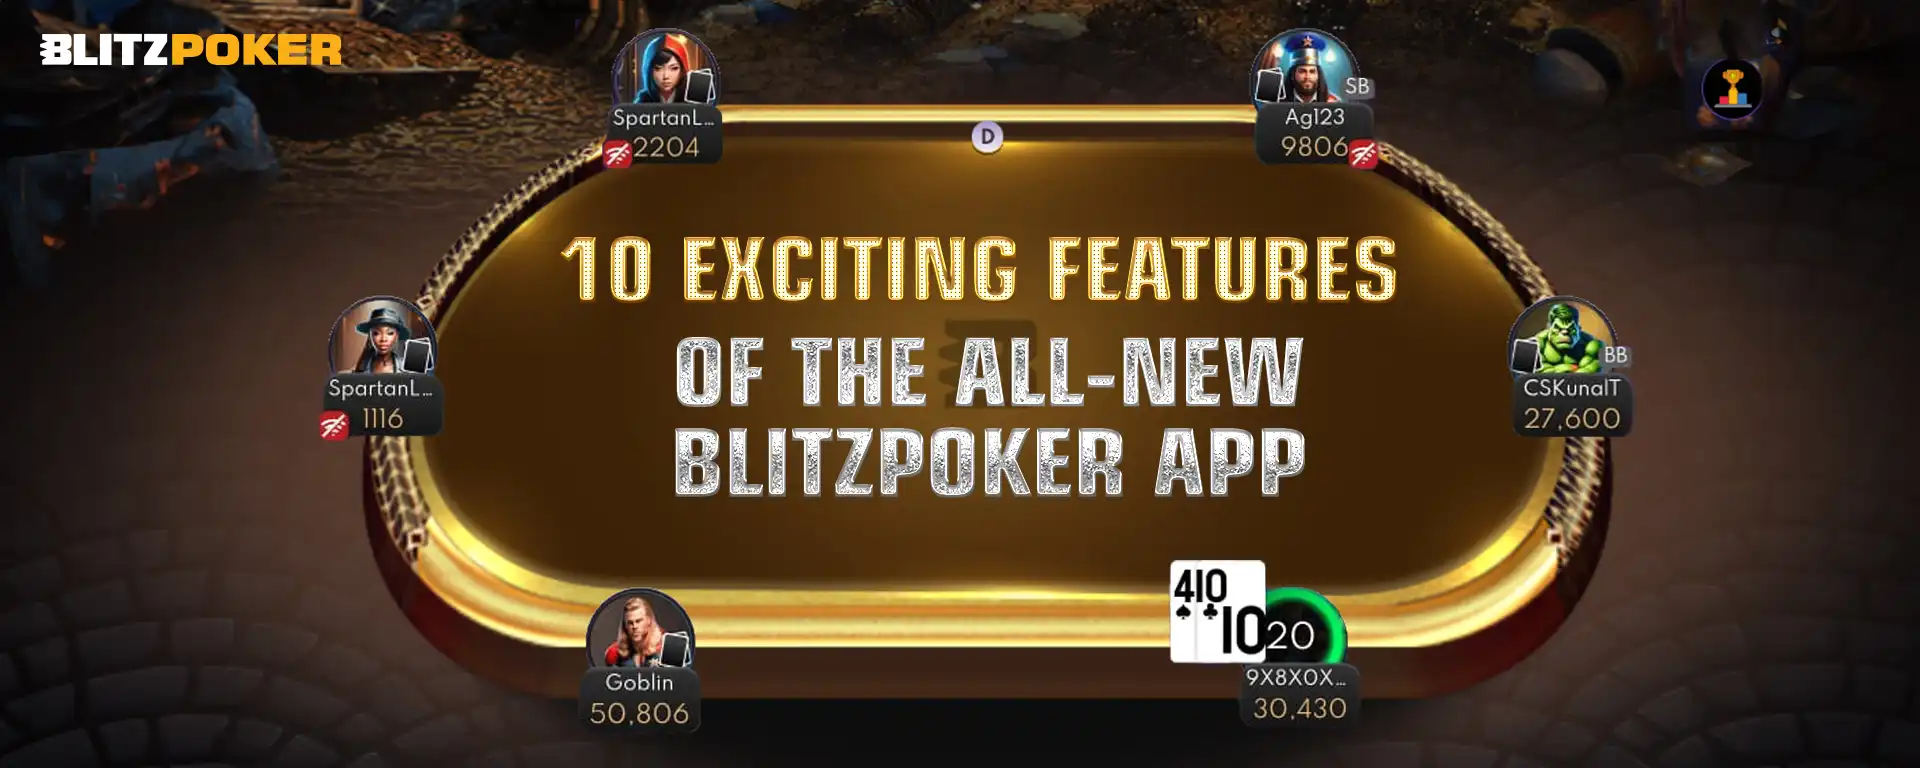 All-New BLITZPOKER App